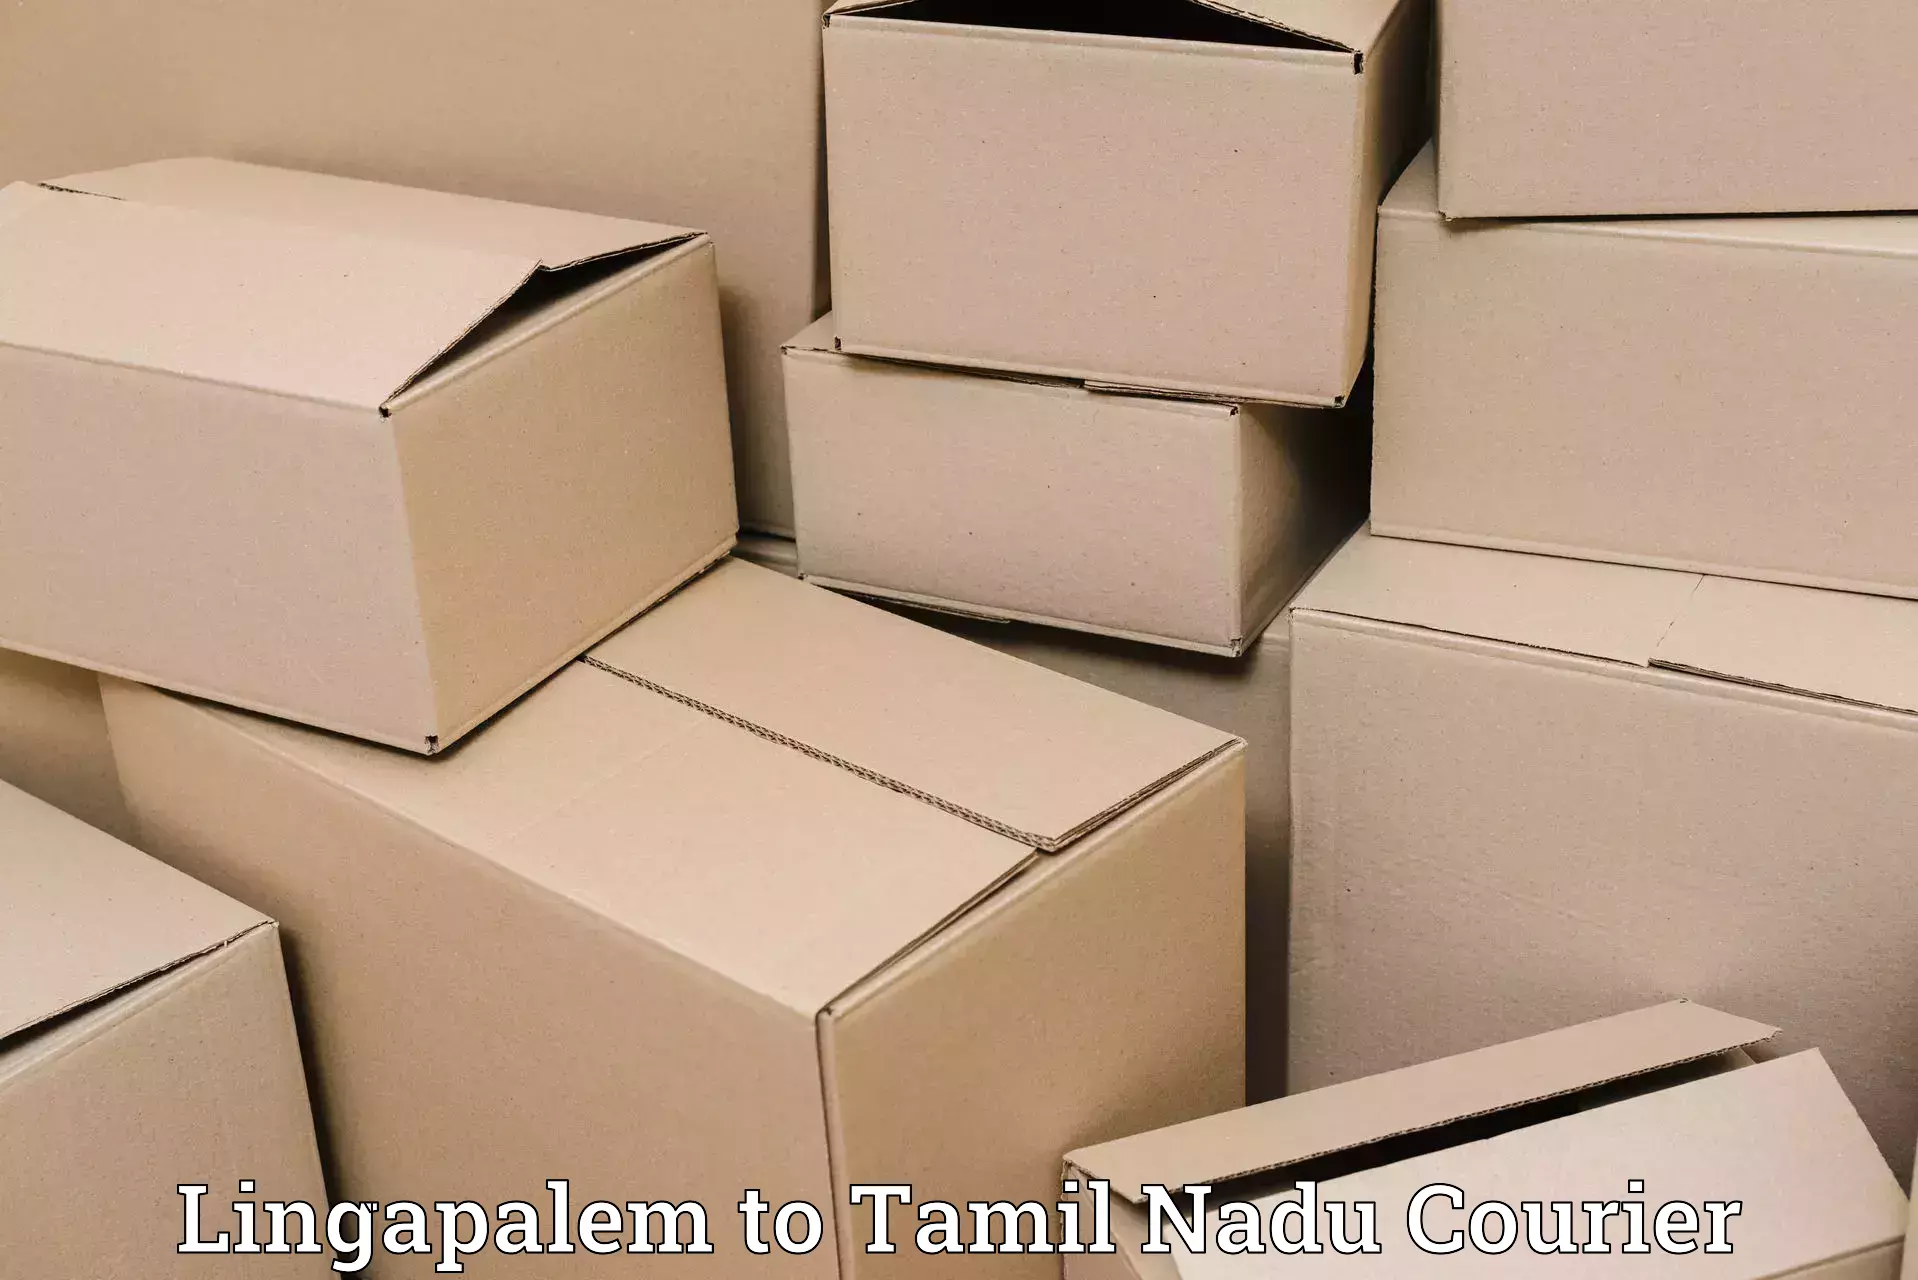 Speedy delivery service Lingapalem to Melur